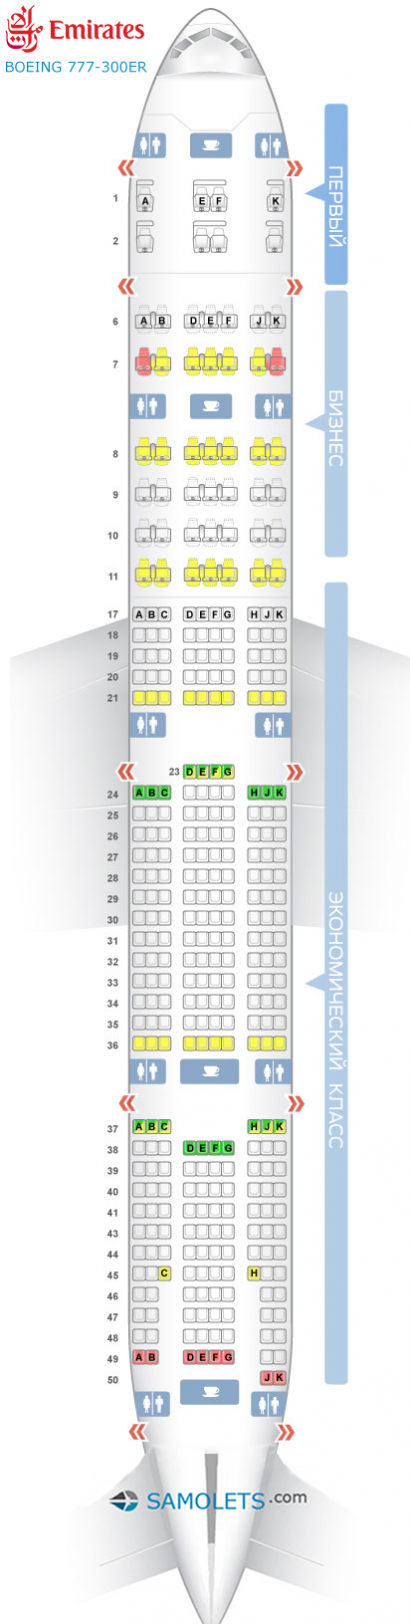 Схема салона Boeing 777-300ER - Emirates. Лучшие места